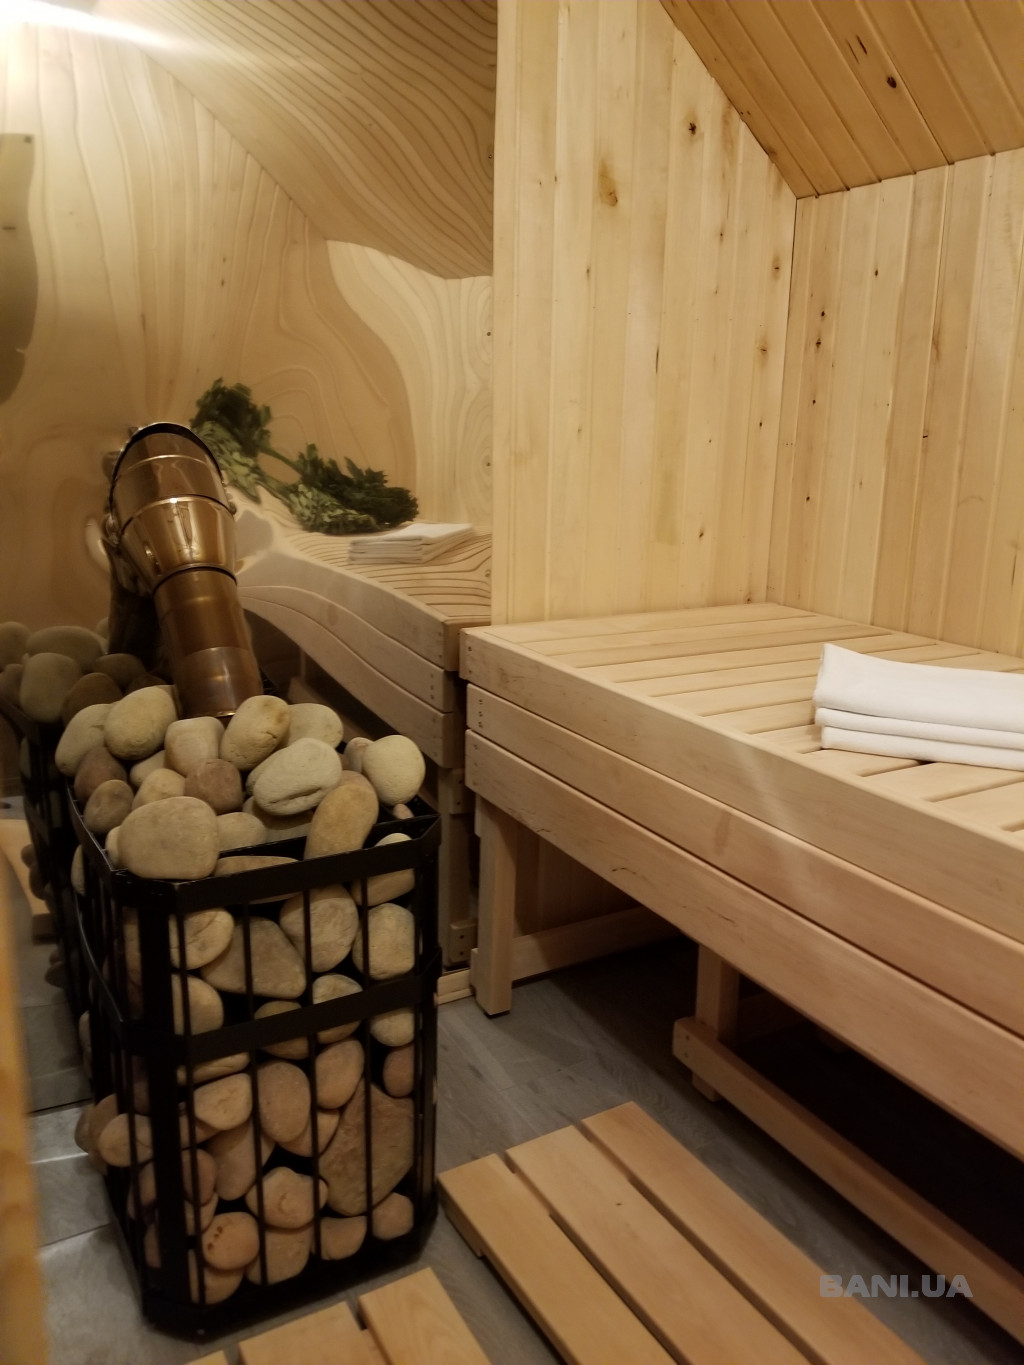 парная баня в Одессе баня сауна на дровах в Одессе стоимость интерьер бассейн